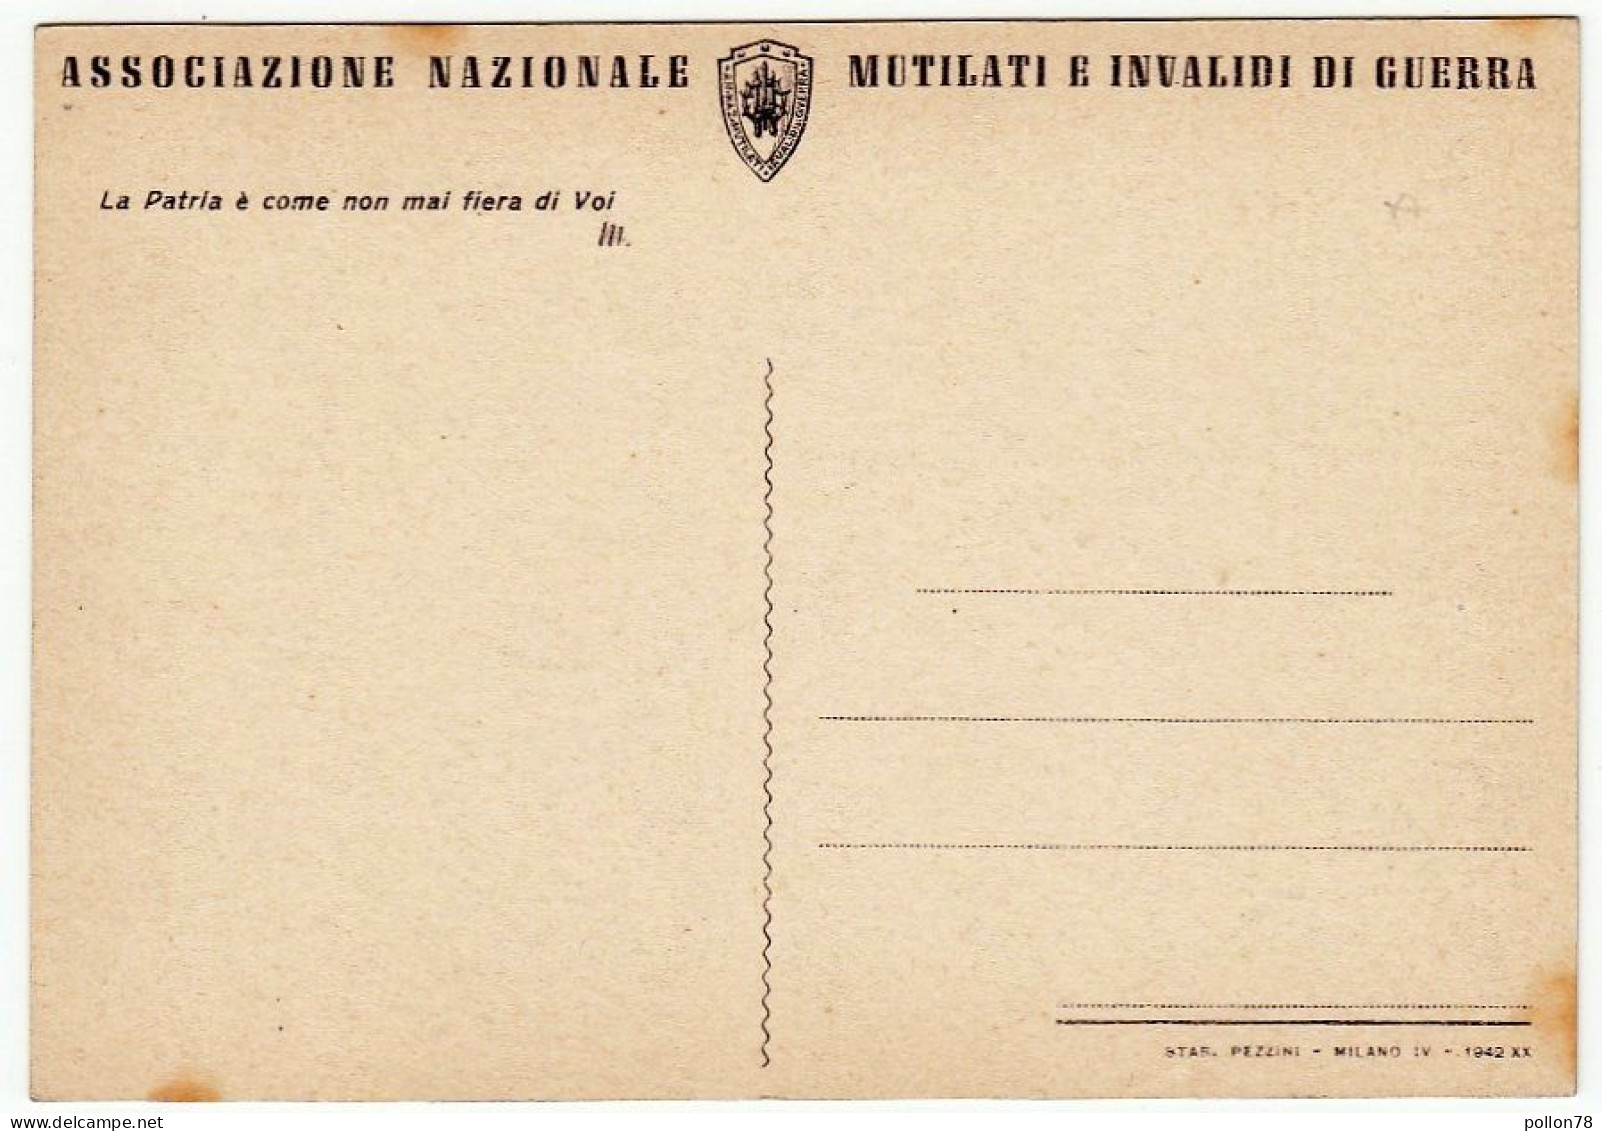 MILITARI - IL FANTE E IL LEGIONARIO - A. G. SANTAGATA - Edita Nel 1942 - Vedi Retro - Uniformi